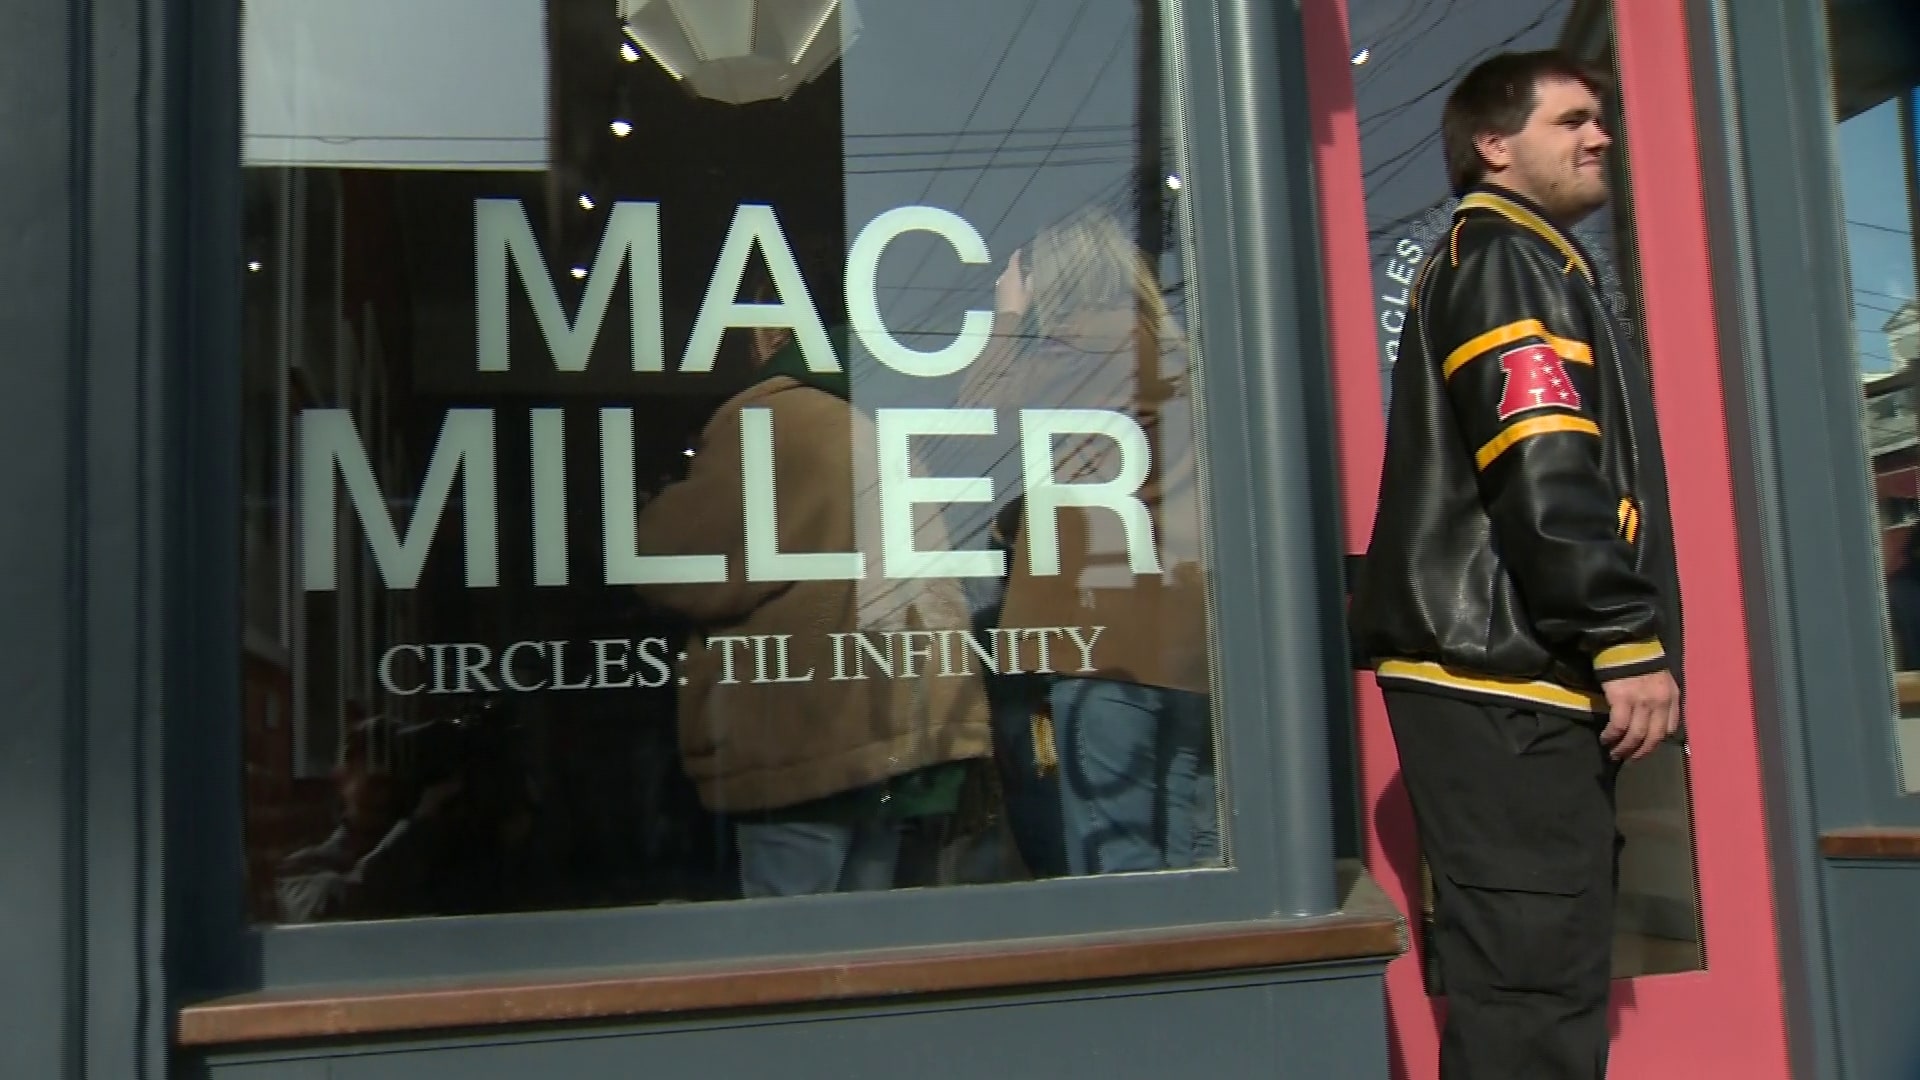 Mac Miller "Circles" Pop-Up